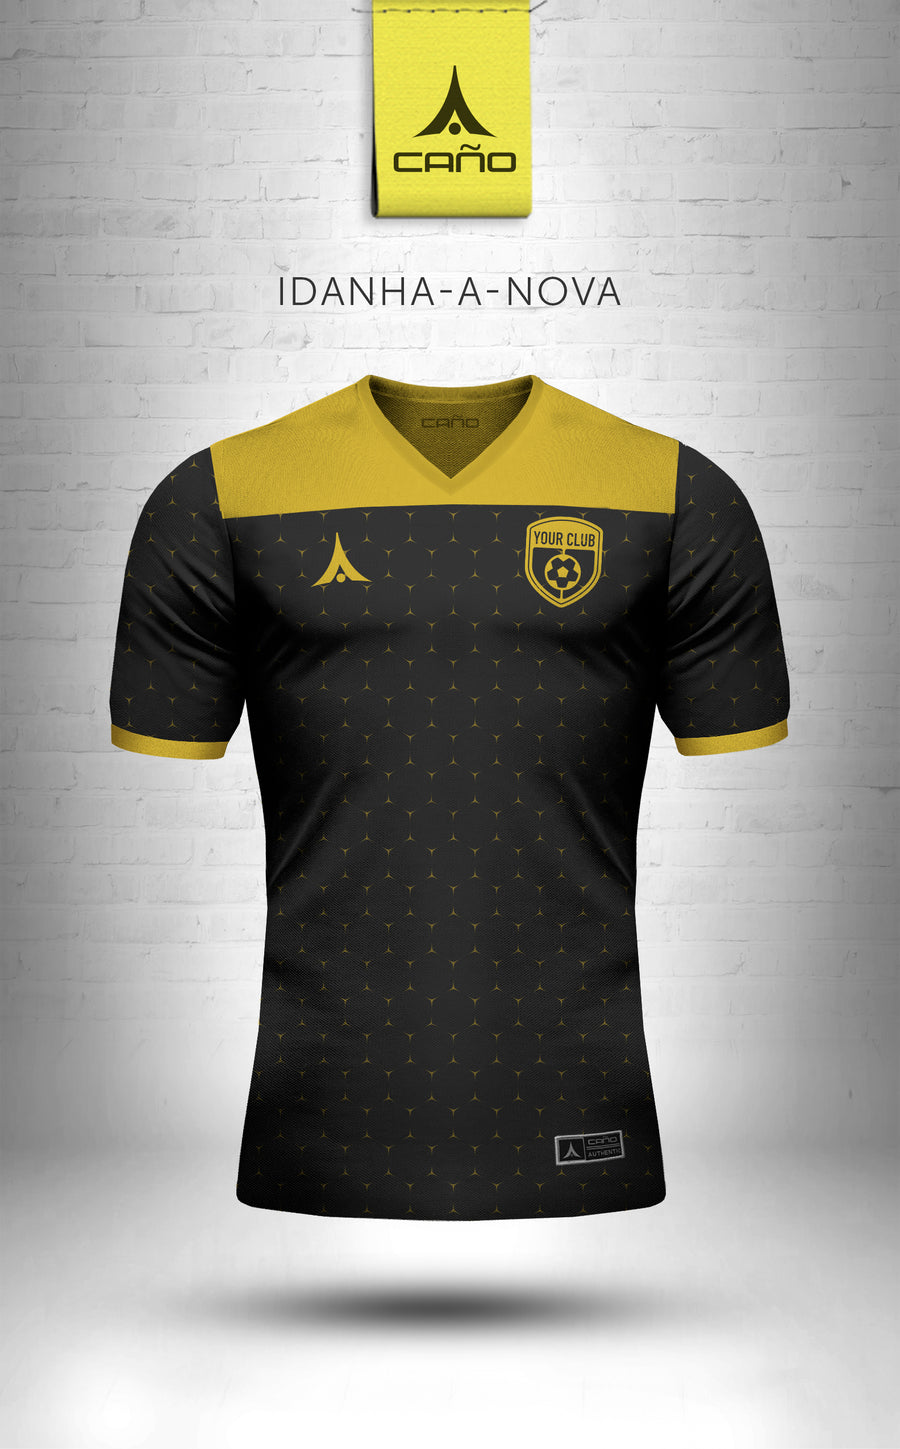 Idanha-a-Nova in black/gold